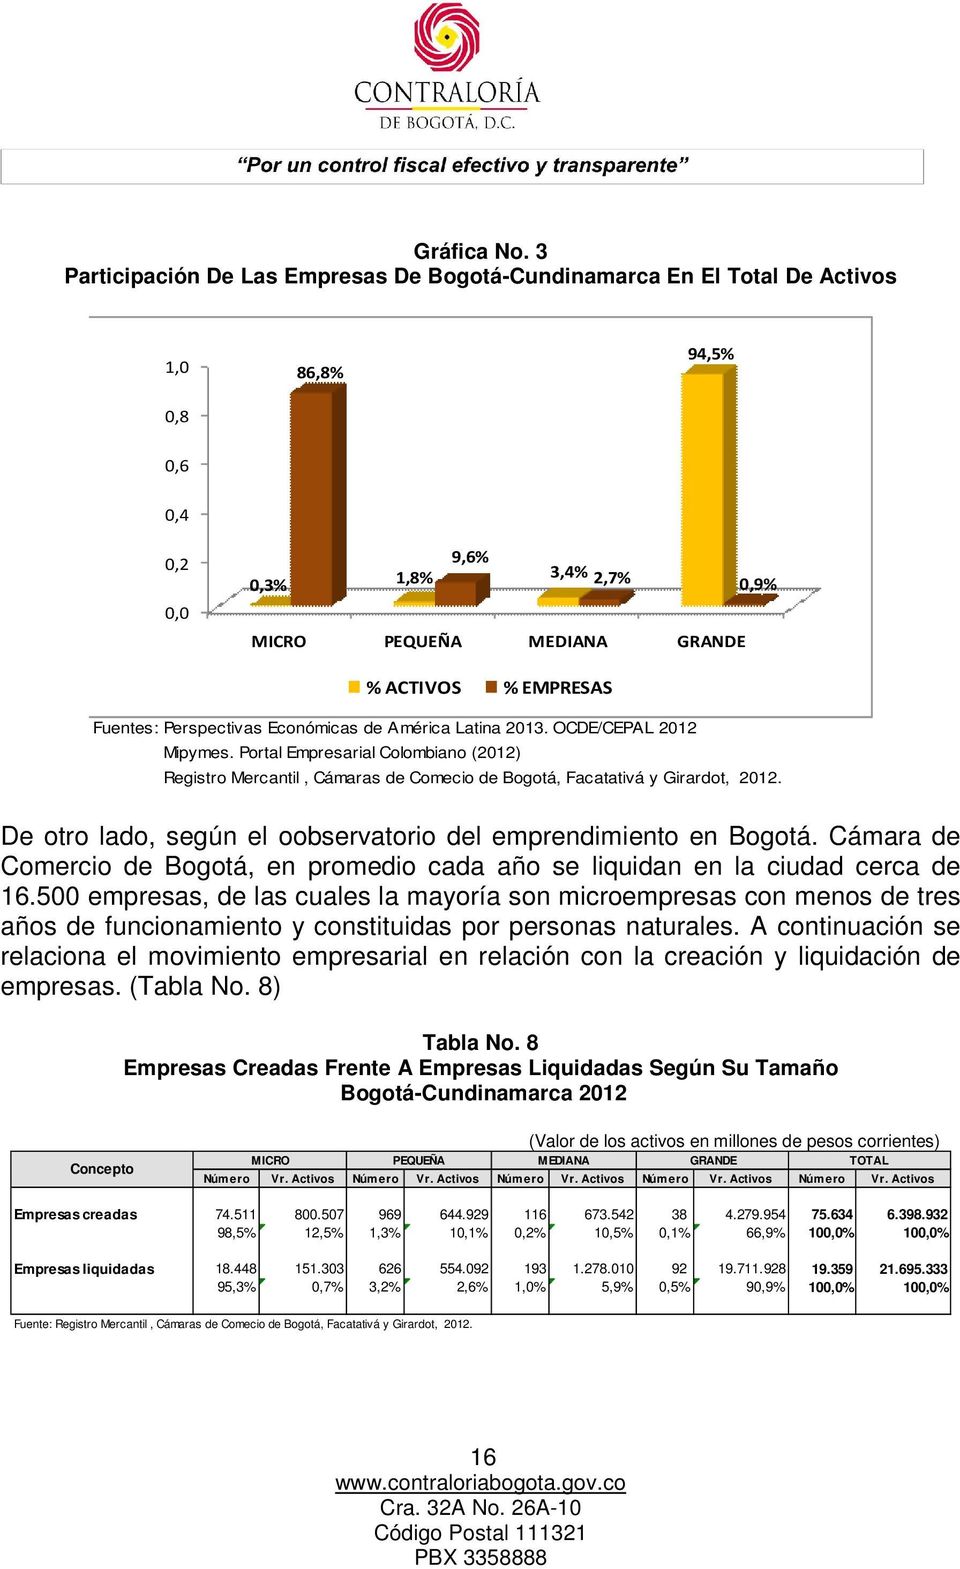 Fuentes: Perspectivas Económicas de América Latina 2013. OCDE/CEPAL 2012 Mipymes. Portal Empresarial Colombiano (2012) Registro Mercantil, Cámaras de Comecio de Bogotá, Facatativá y Girardot, 2012.